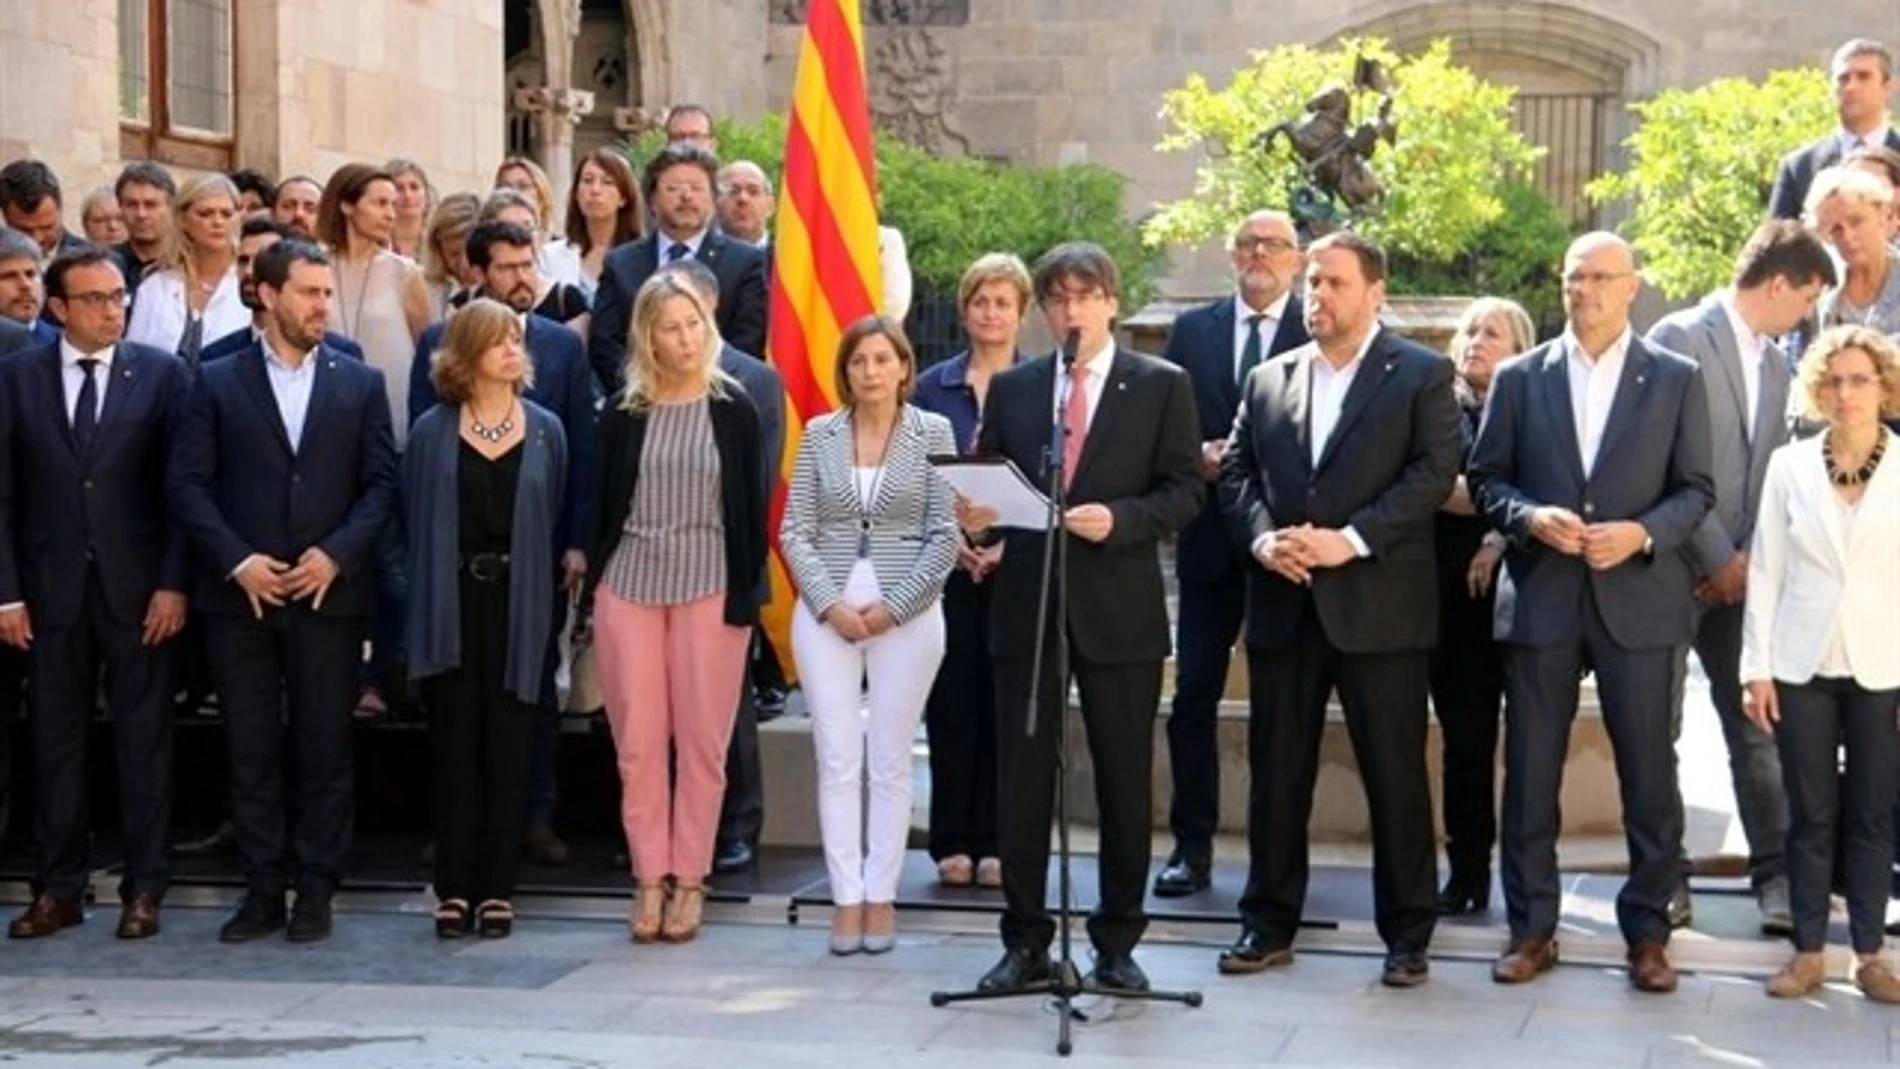 Carles Puigdemont junto a los miembros del gobierno catalán